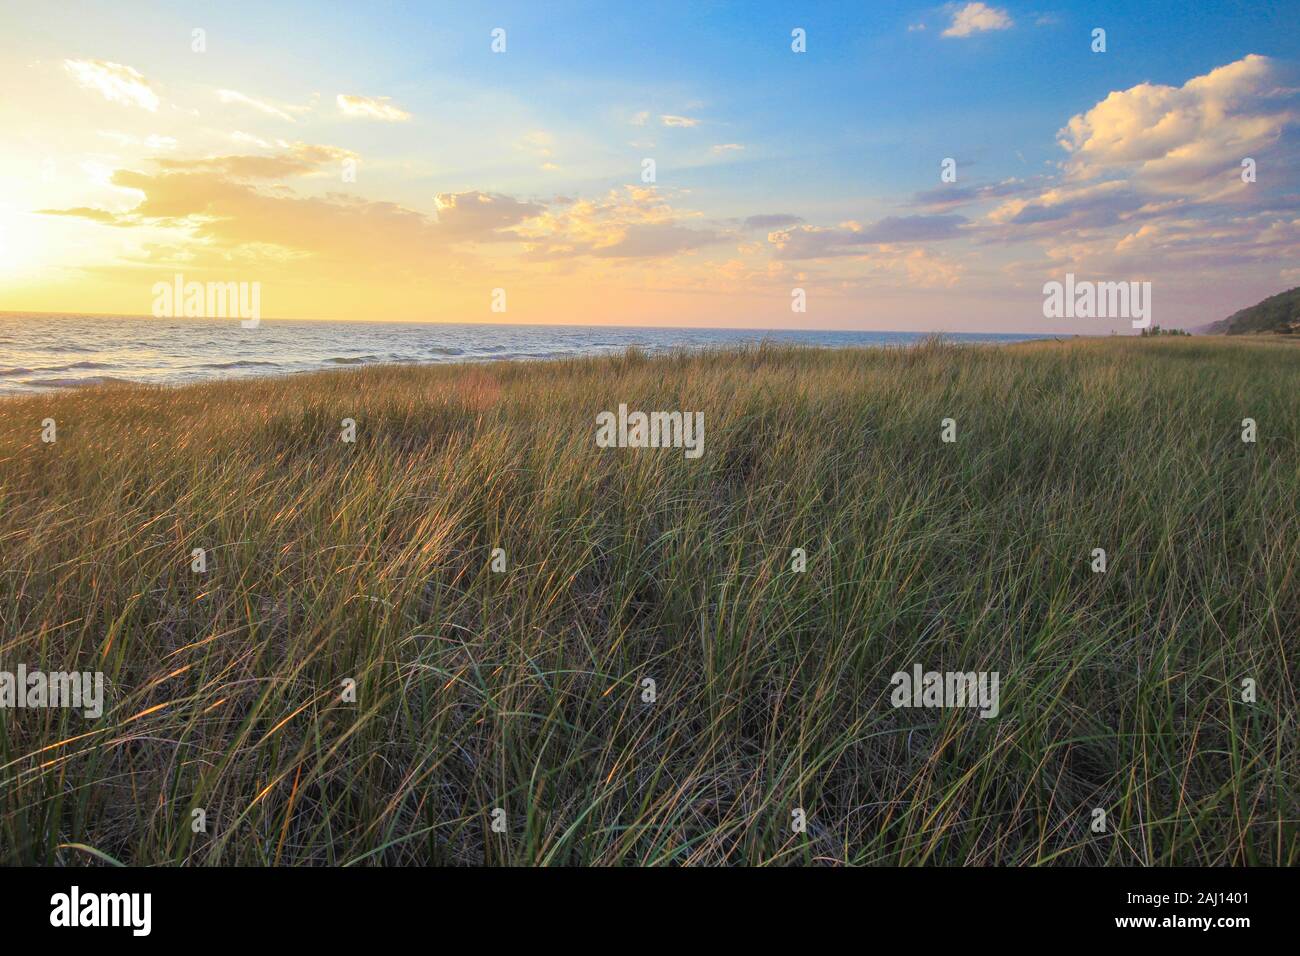 Sommer Sonnenuntergang Strand Hintergrund. Schönen Sommer Sonnenuntergang am Lake Michigan Küste mit dune Grass im Vordergrund Hoffmaster State Park. Stockfoto